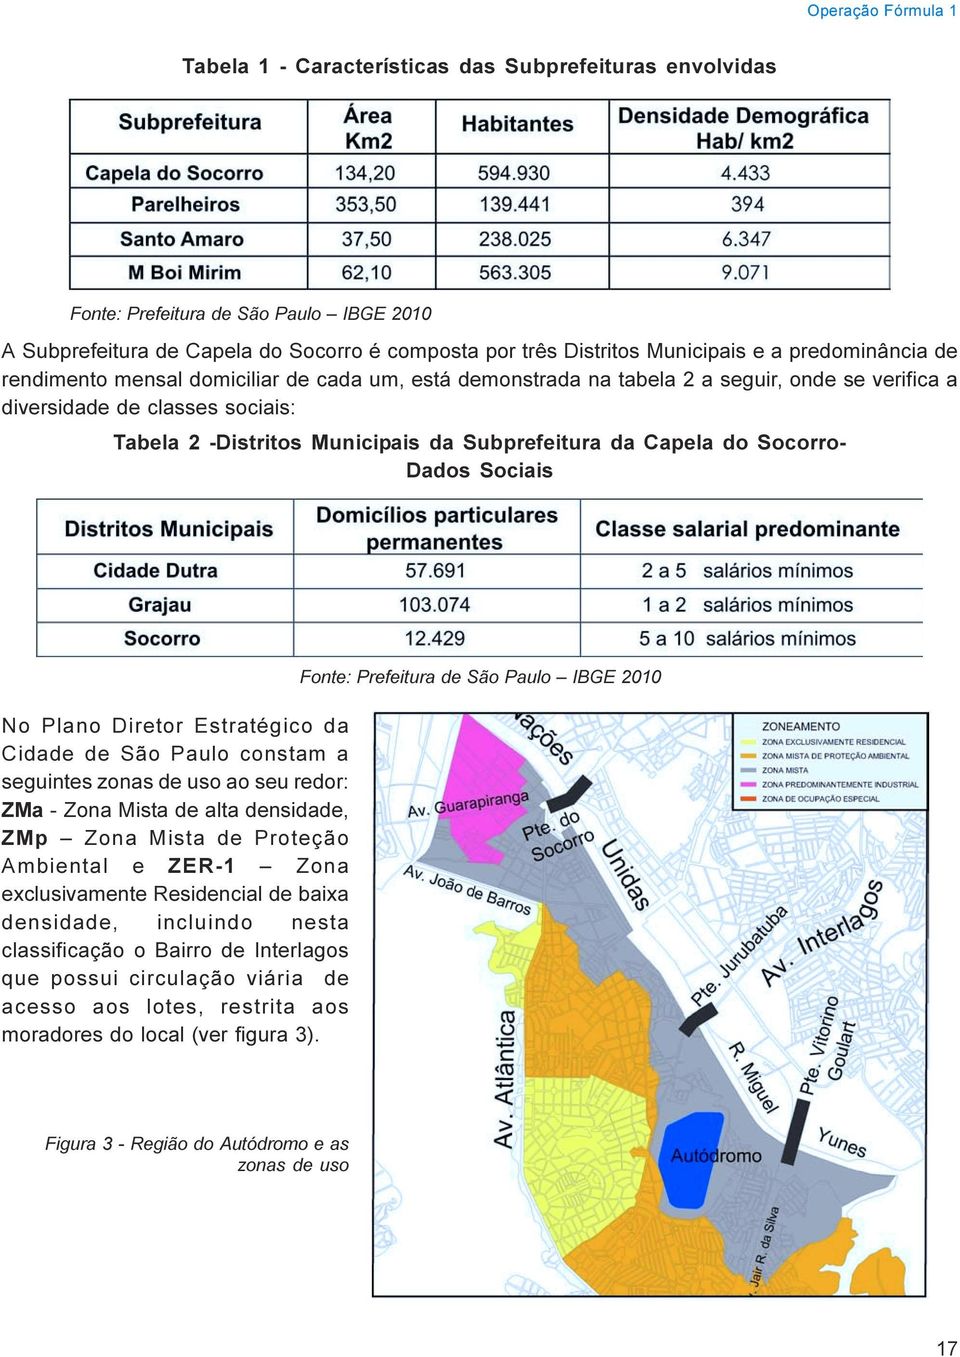 Capela do Socorro- Dados Sociais No Plano Diretor Estratégico da Cidade de São Paulo constam a seguintes zonas de uso ao seu redor: ZMa - Zona Mista de alta densidade, ZMp Zona Mista de Proteção